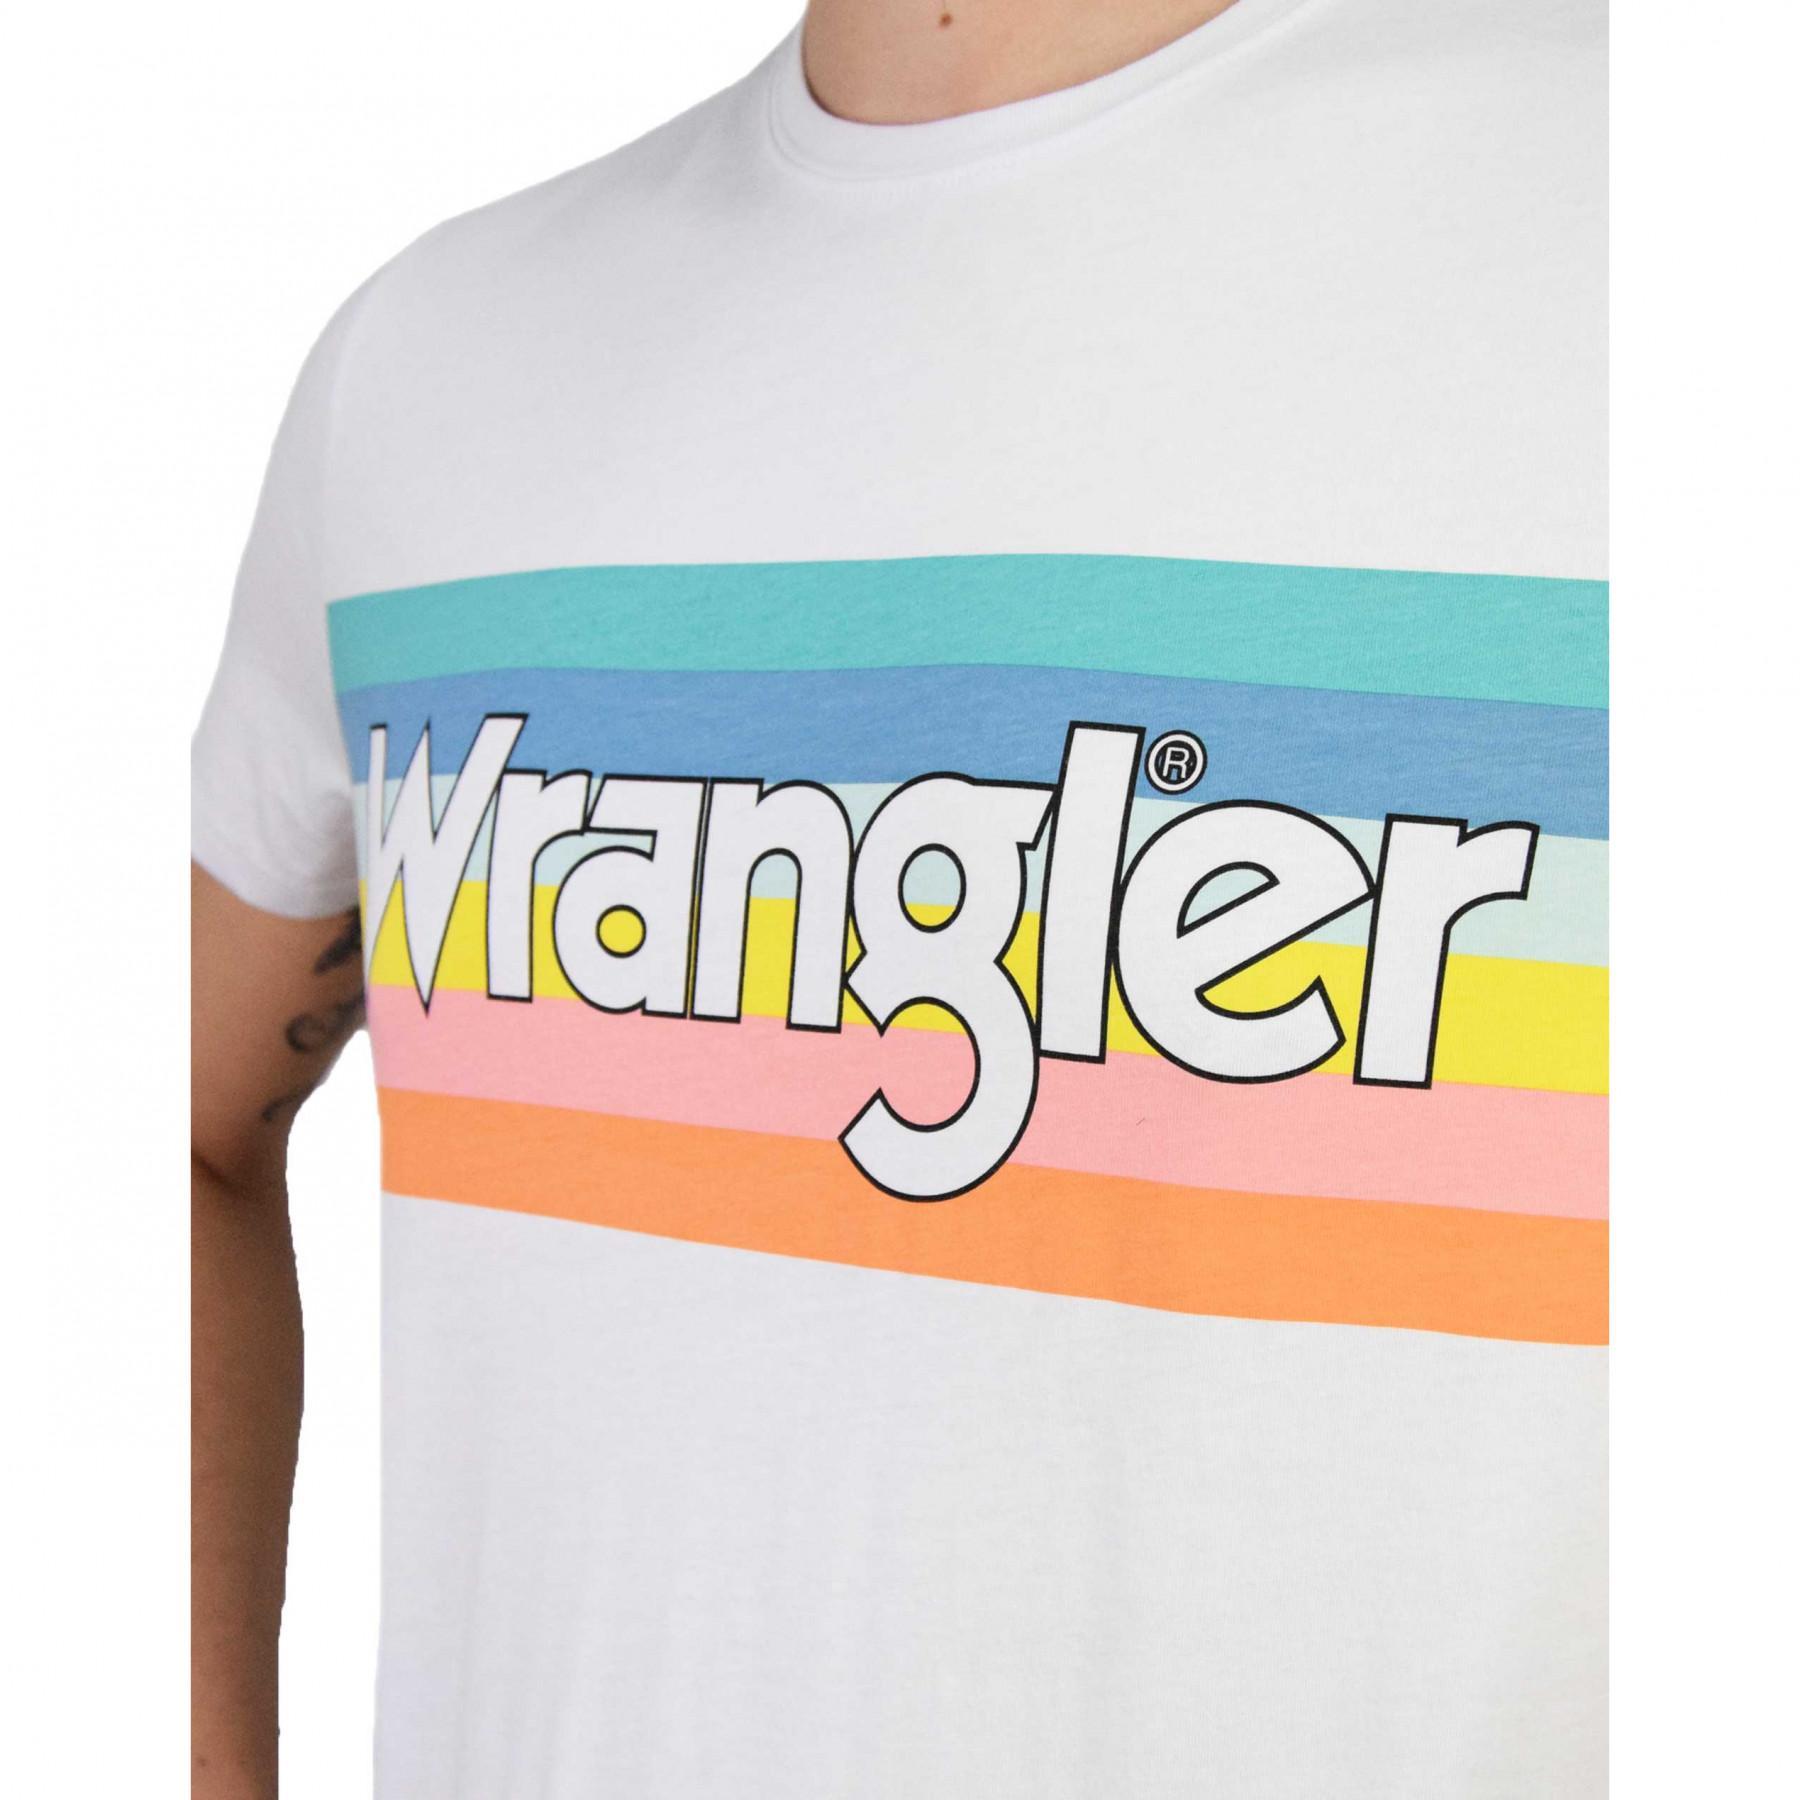 T-shirt Wrangler summer logo tee